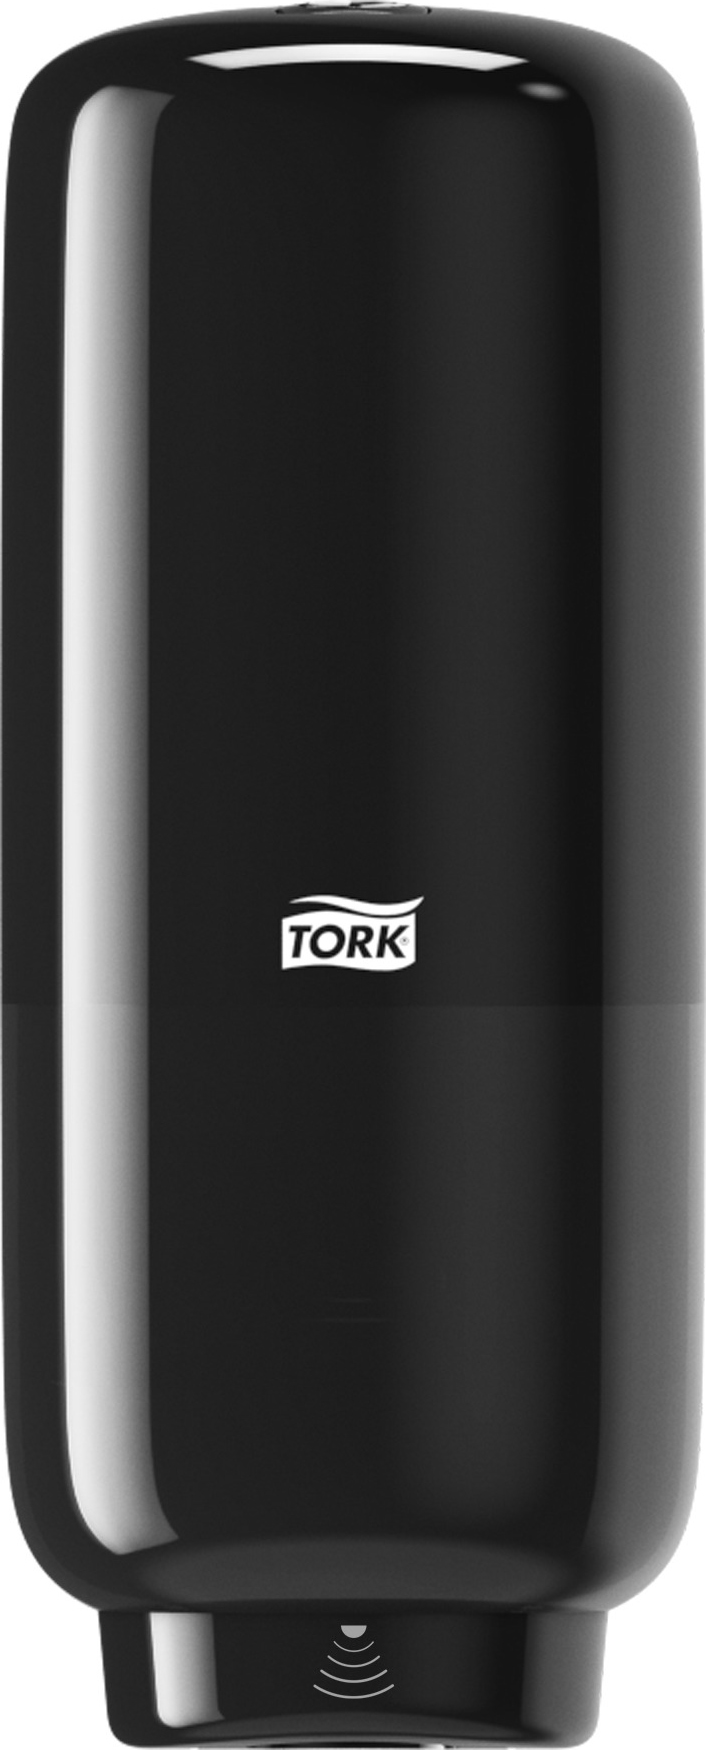 [2256135] Dispenser Tork S4 sensor sv